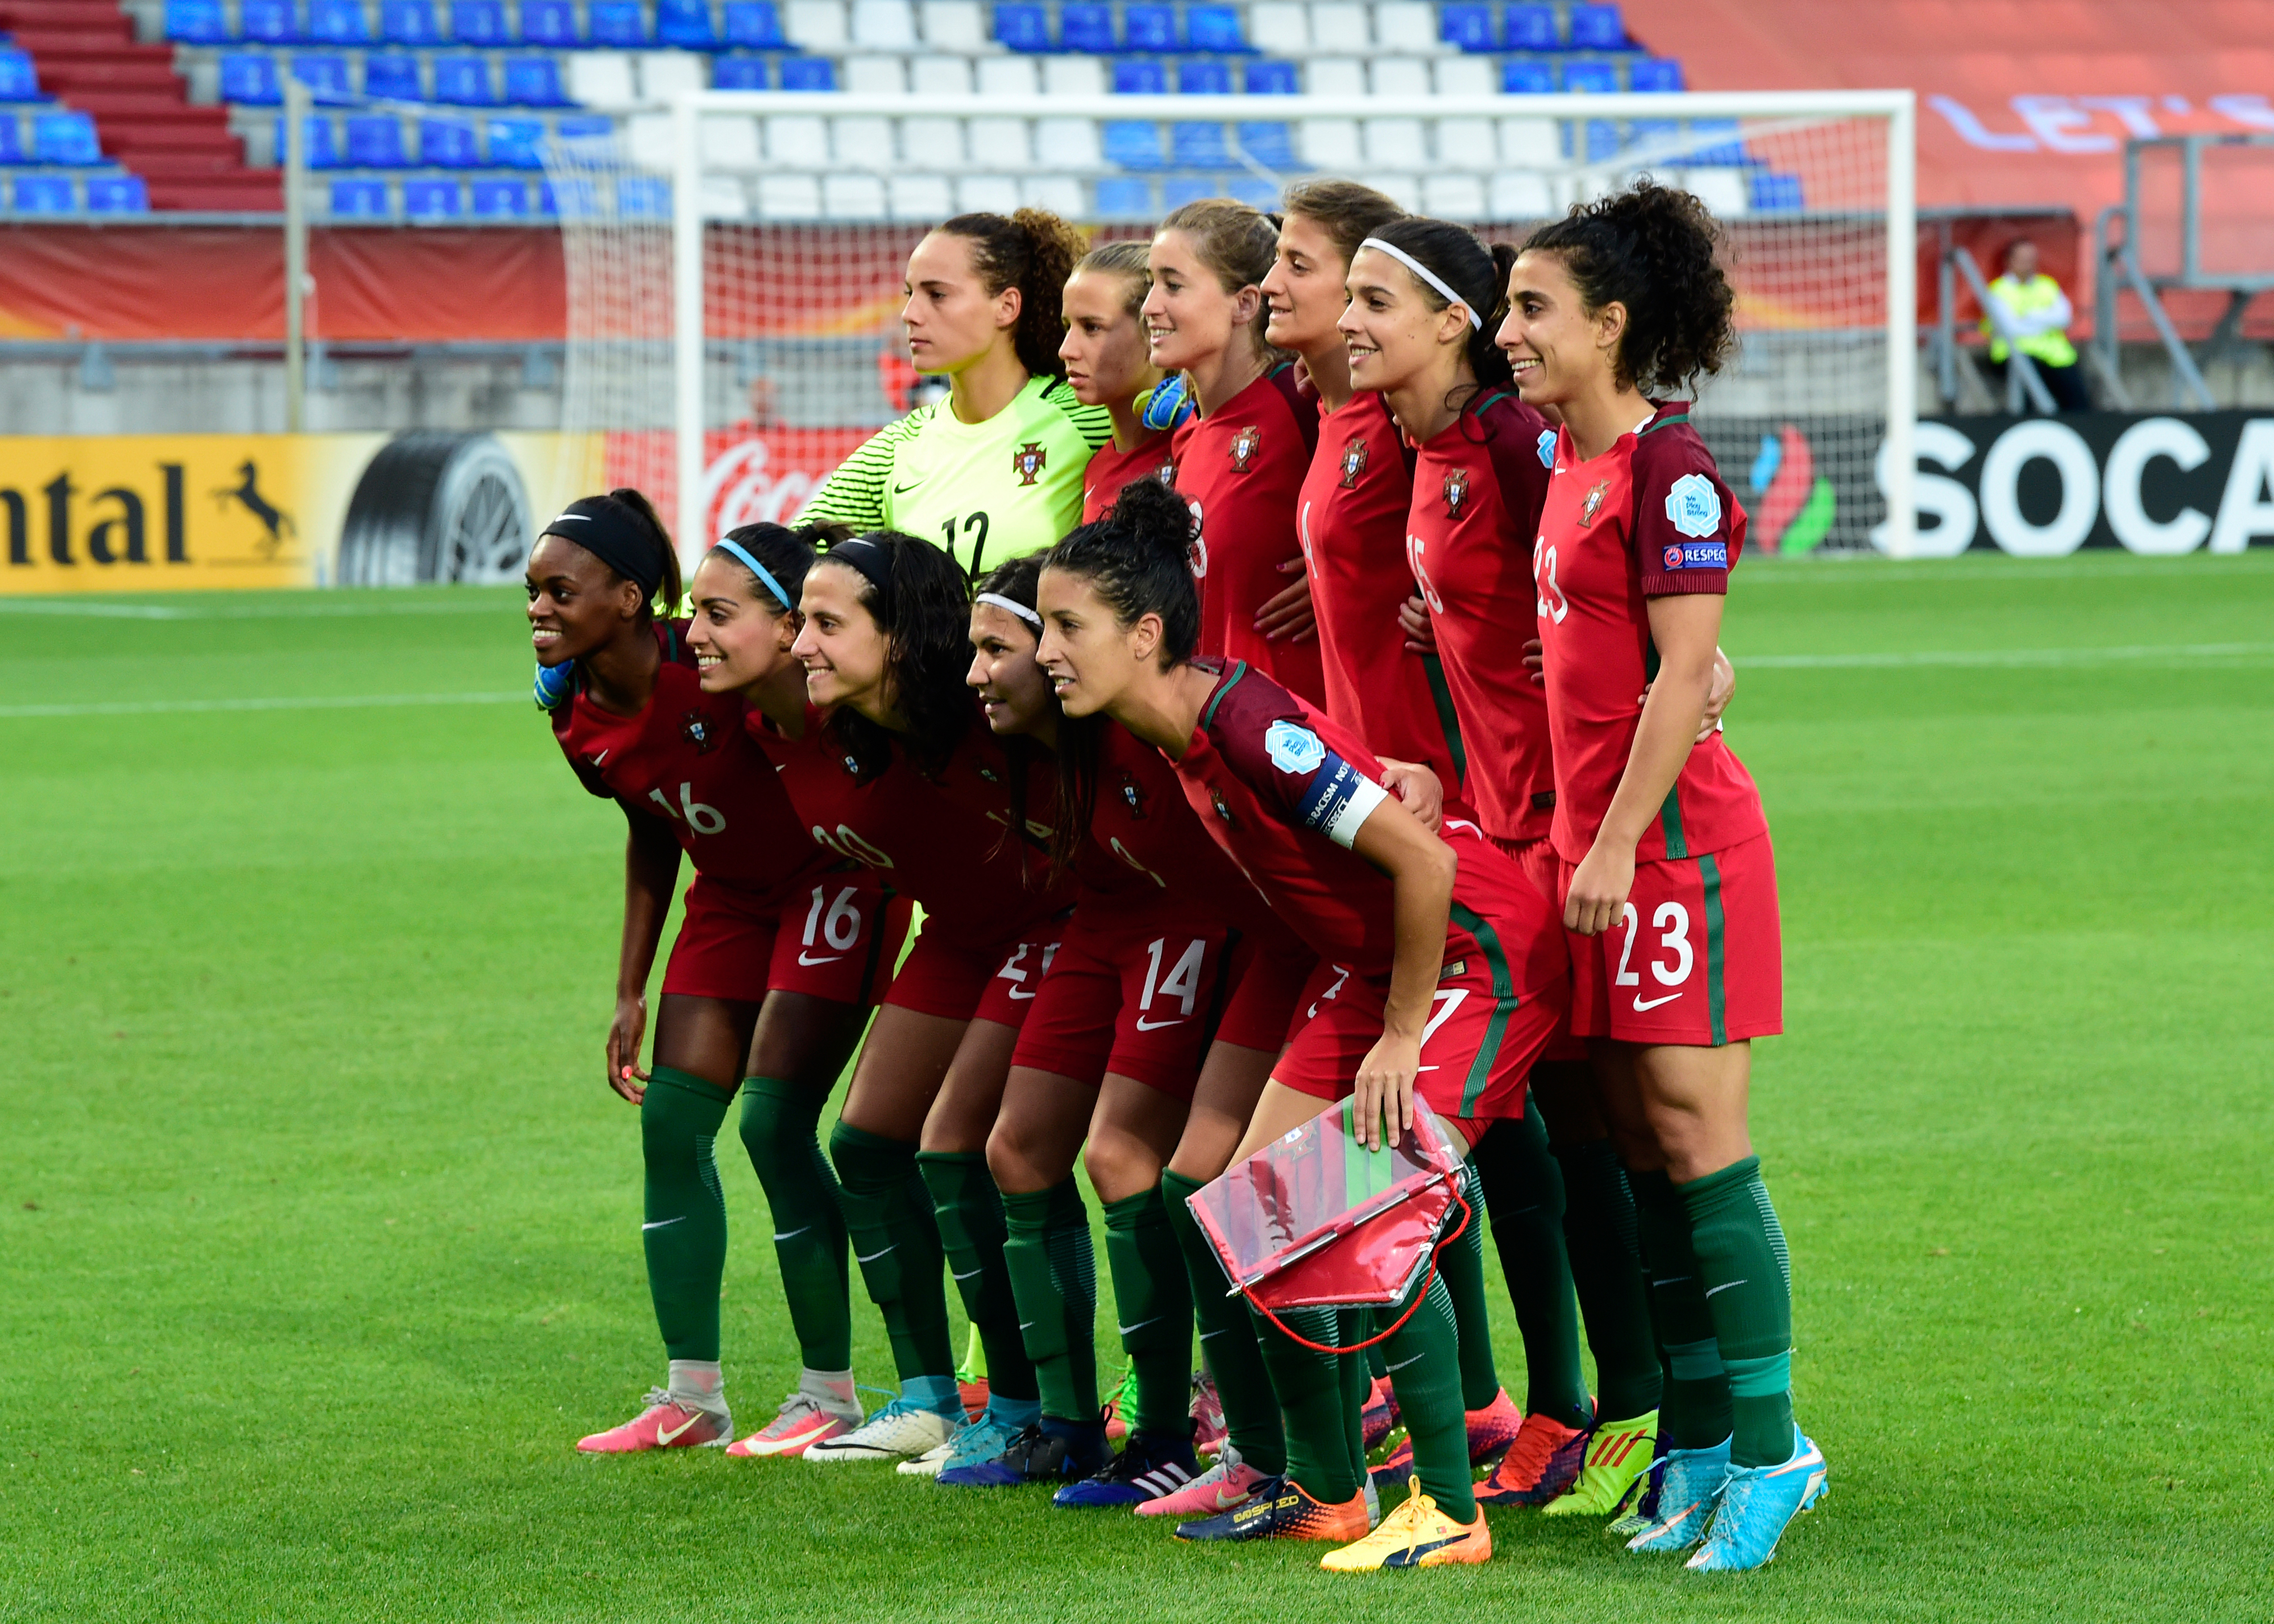 Portugal cai de pé no Europeu de futebol feminino - Seleção Nacional  Feminino - SAPO Desporto